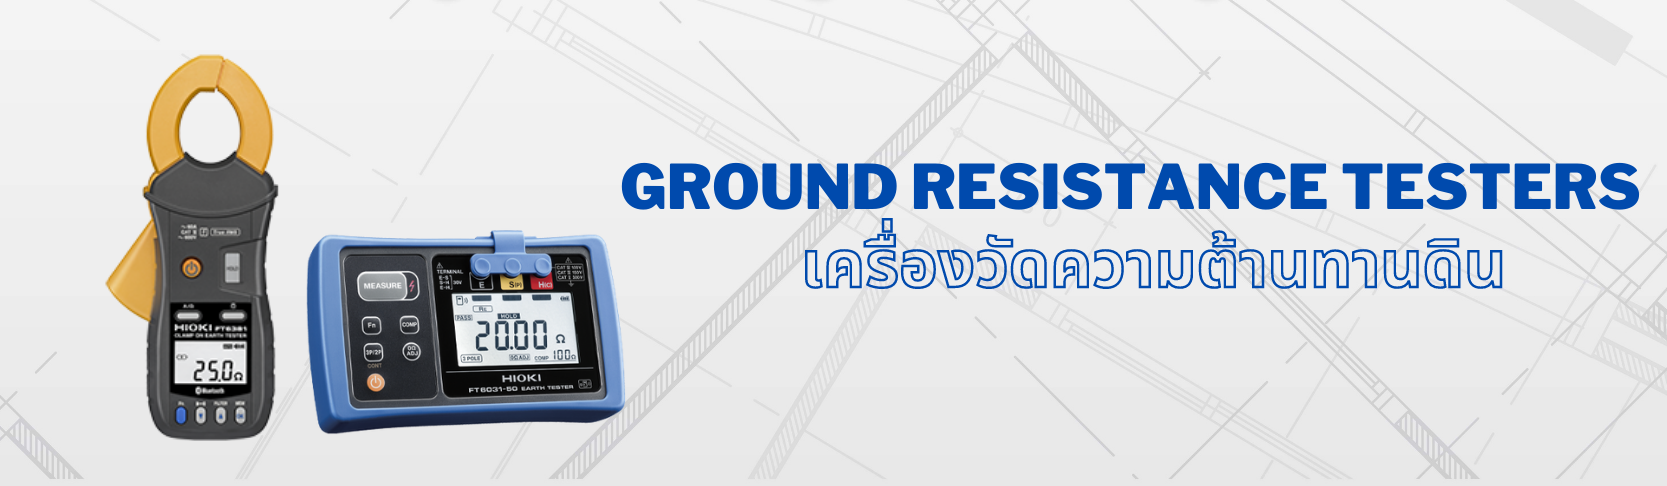 เครื่องวัดความต้านทานดิน (Ground Resistance Testers)